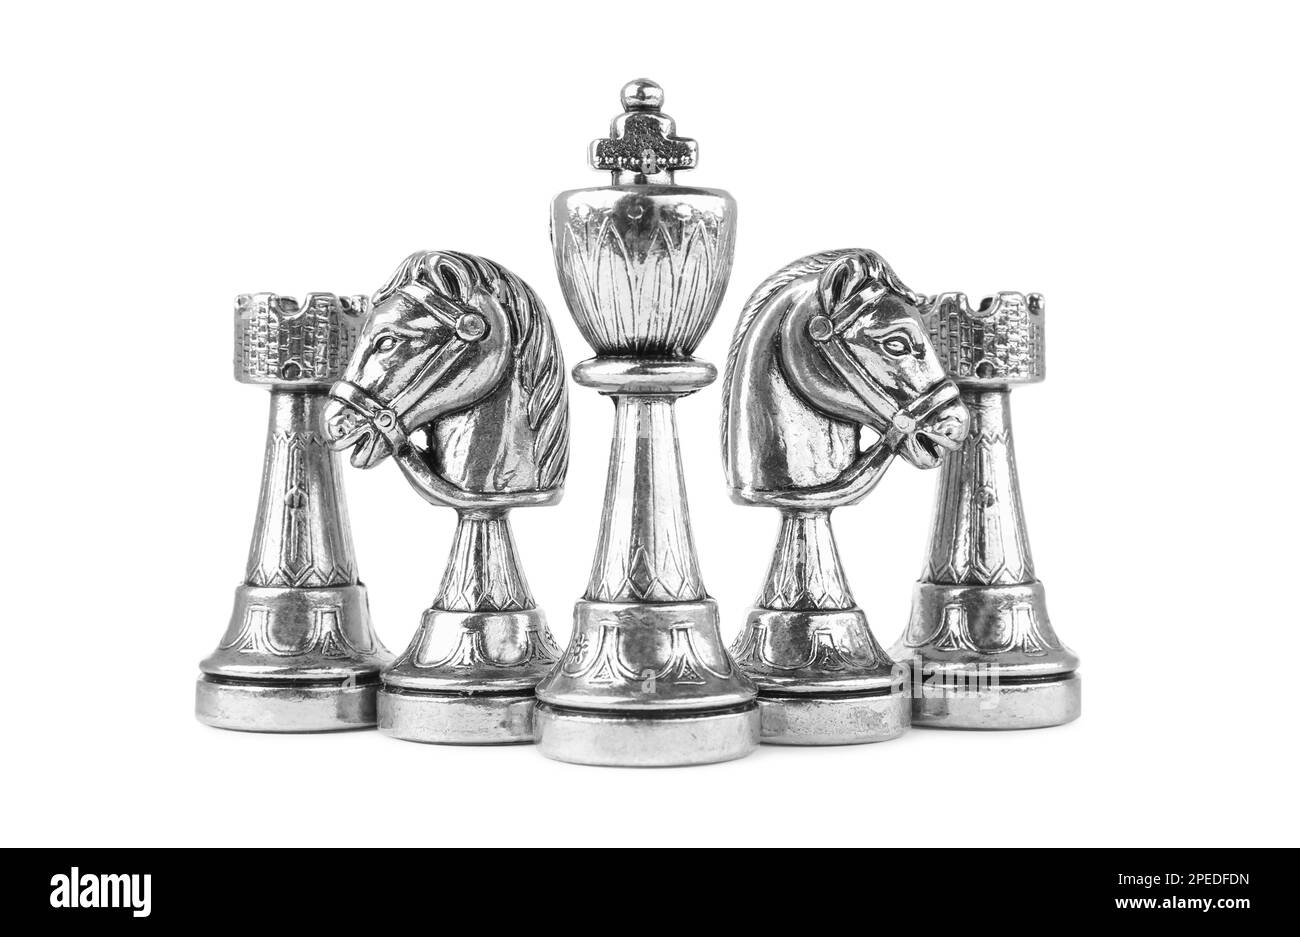 Jeu de pièces d'échecs argentées sur fond blanc Banque D'Images